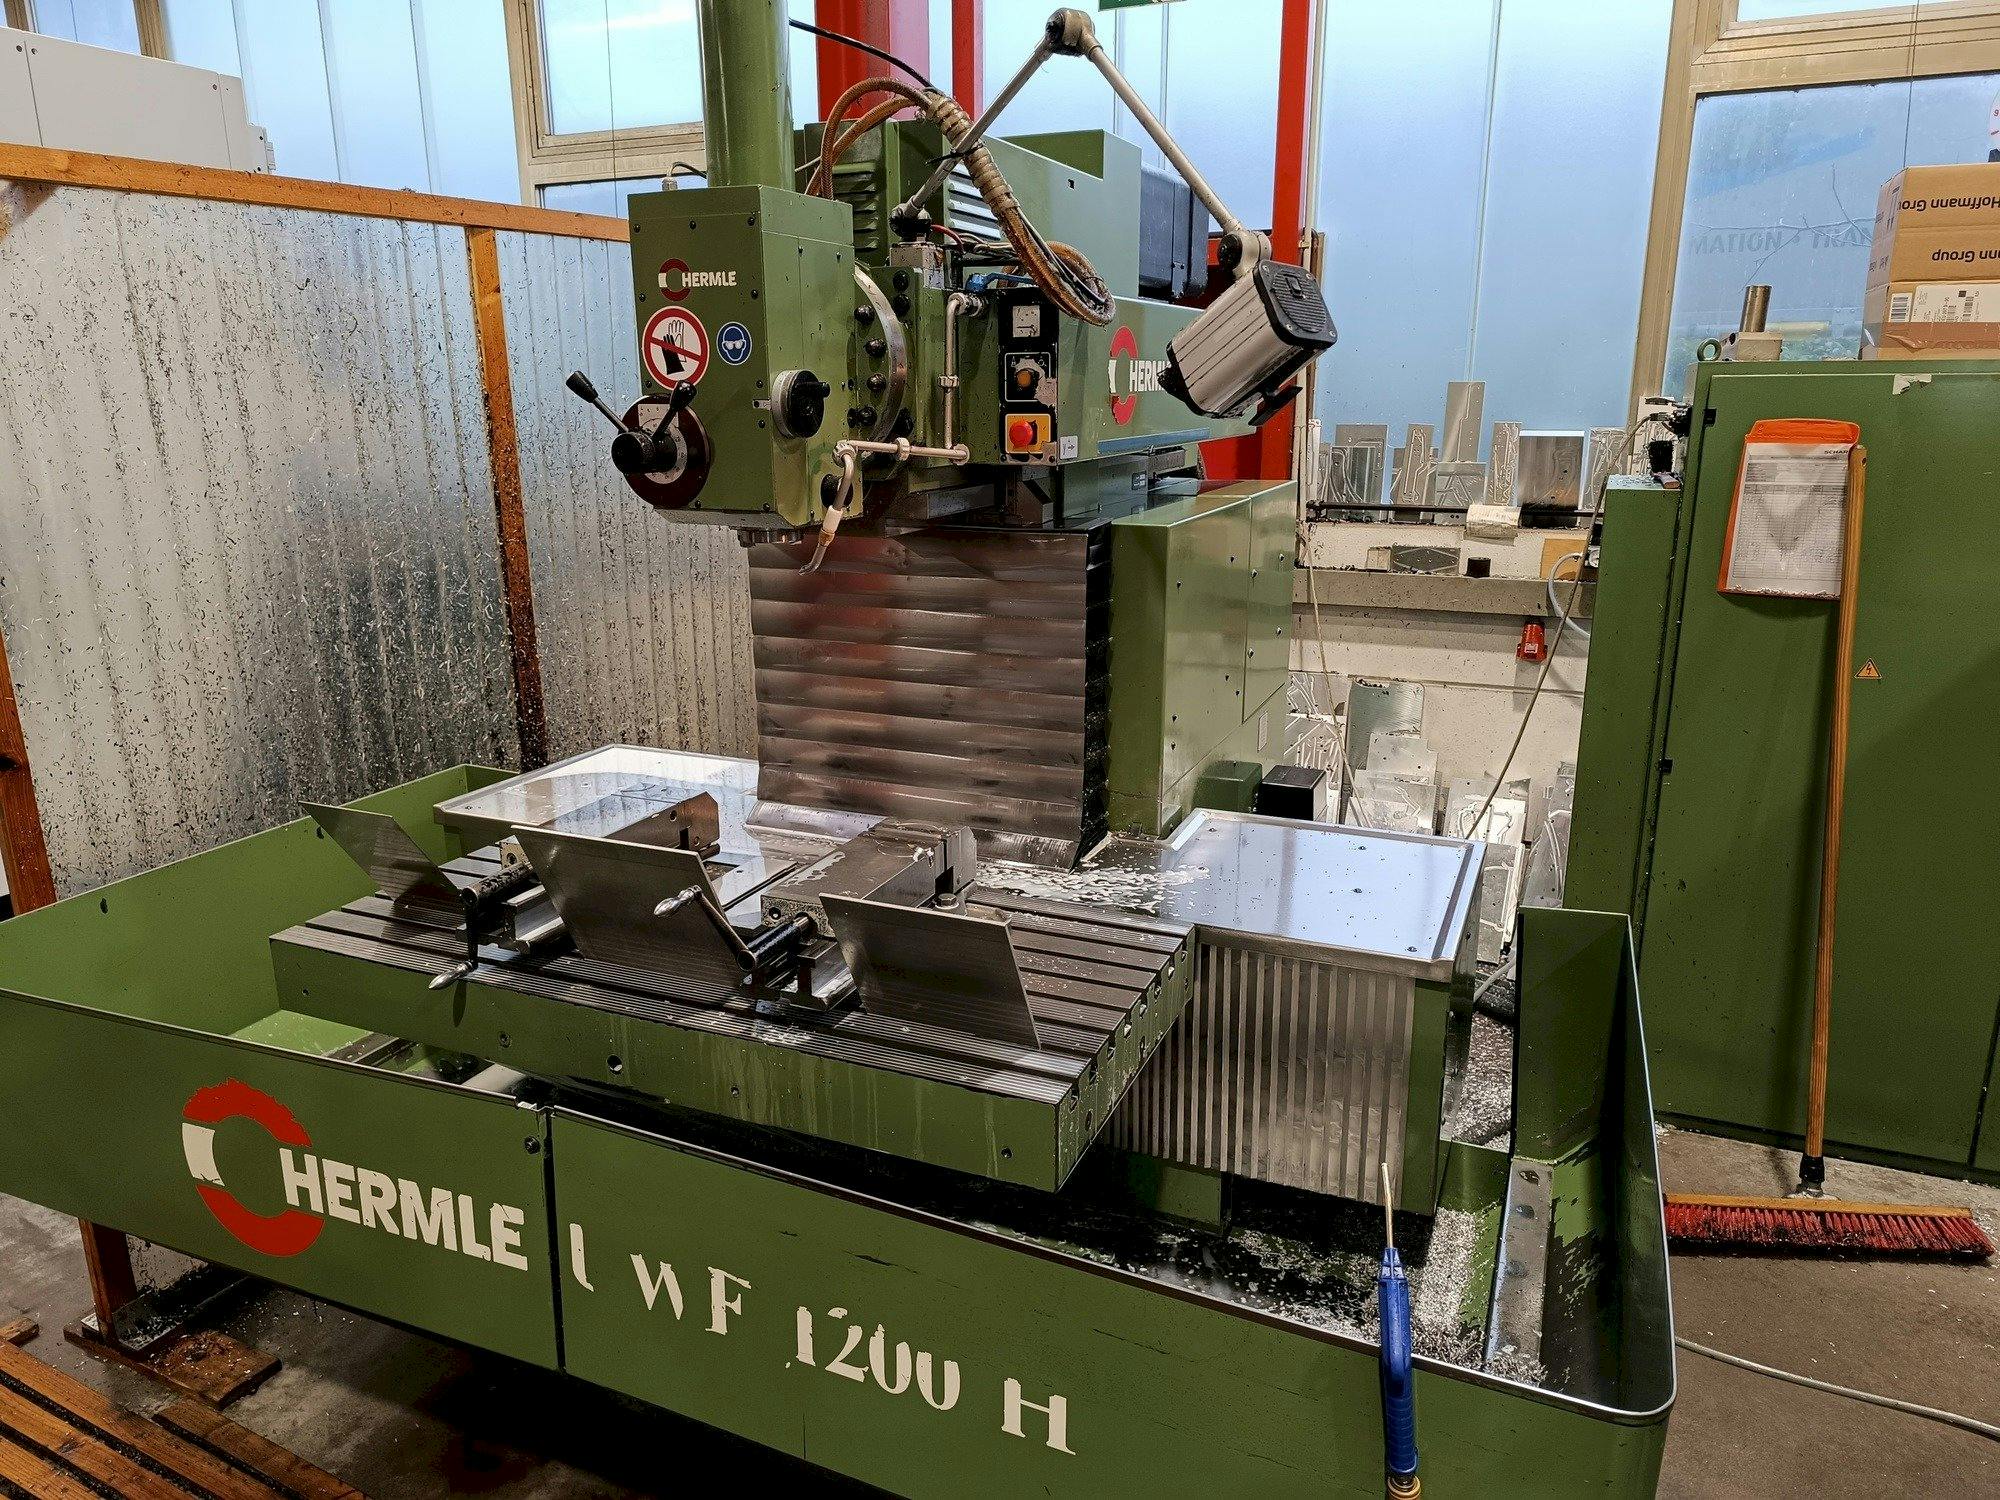 Vista frontal de la máquina HERMLE UWF1200